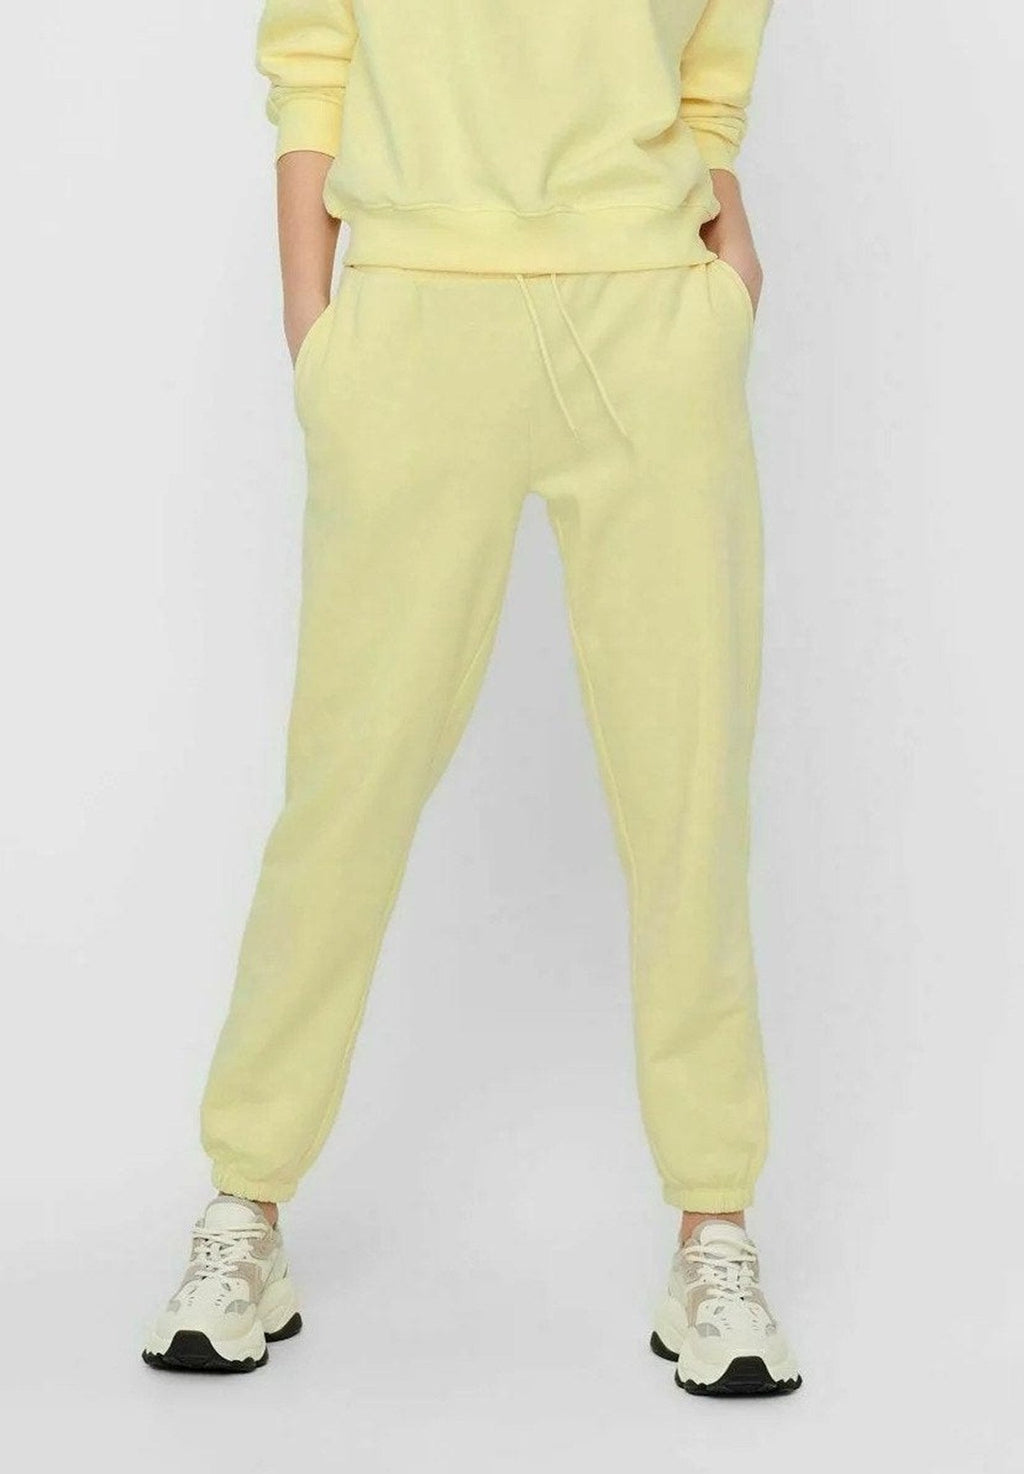 舒适的运动裤 - 柔和的黄色